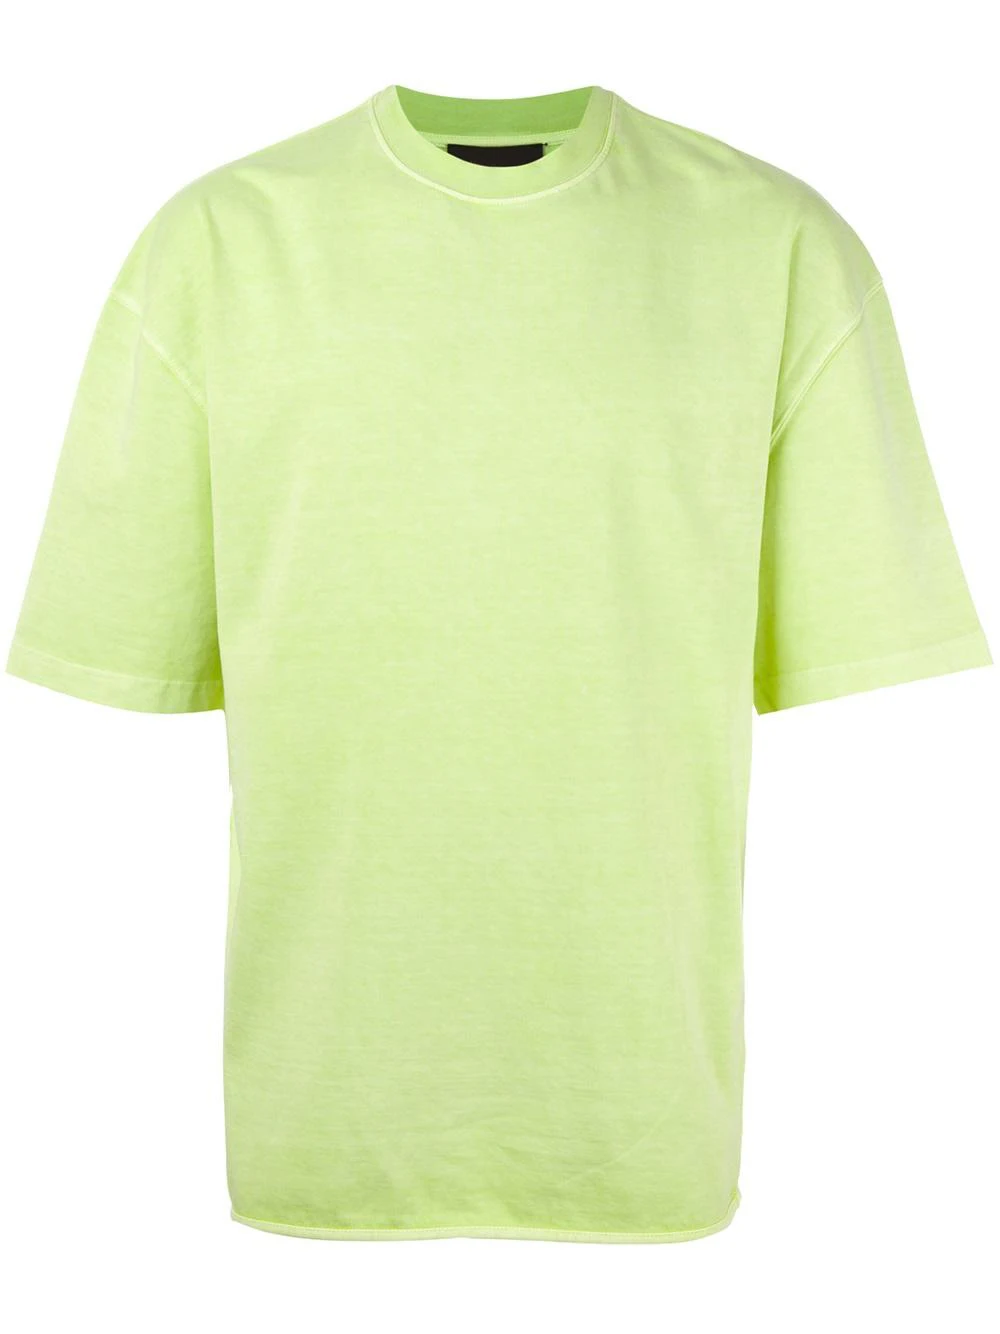 Футболка из плотного хлопка. Футболка мужская хлопок зеленая. Зеленая футболка оверсайз. Зеленая футболка мужская оверсайз. Футболка Yeezy.